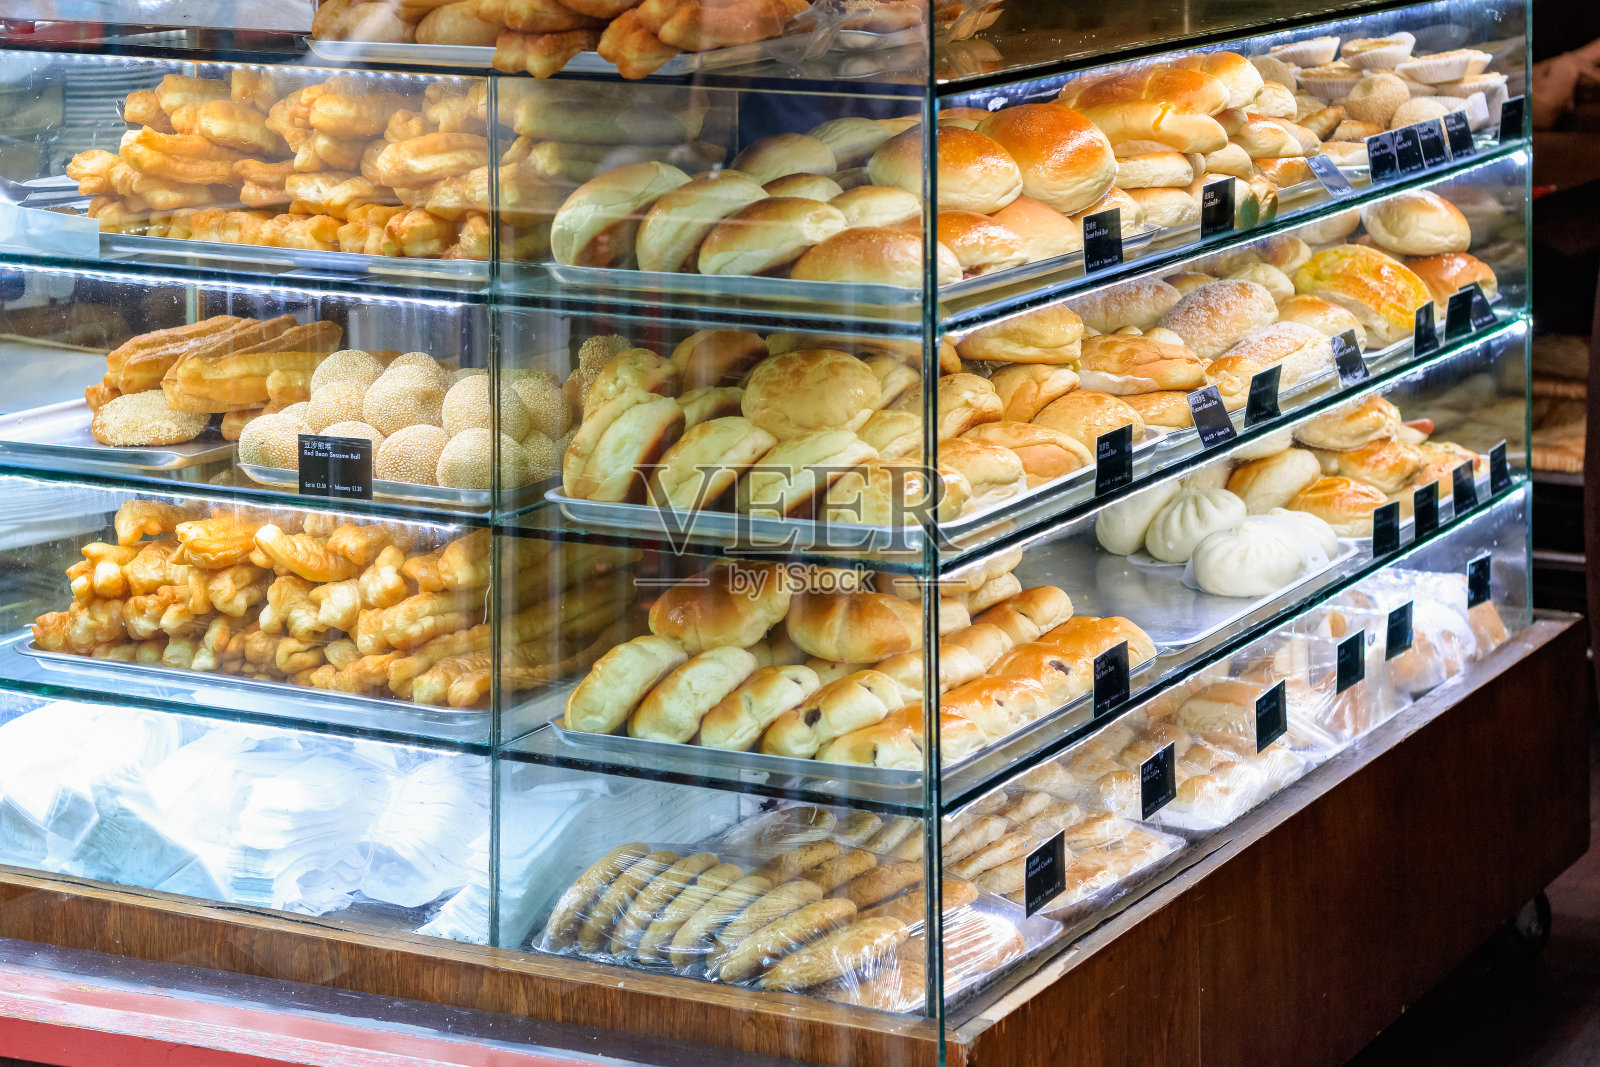 伦敦唐人街一家面包店里展示的中国面包和糕点照片摄影图片